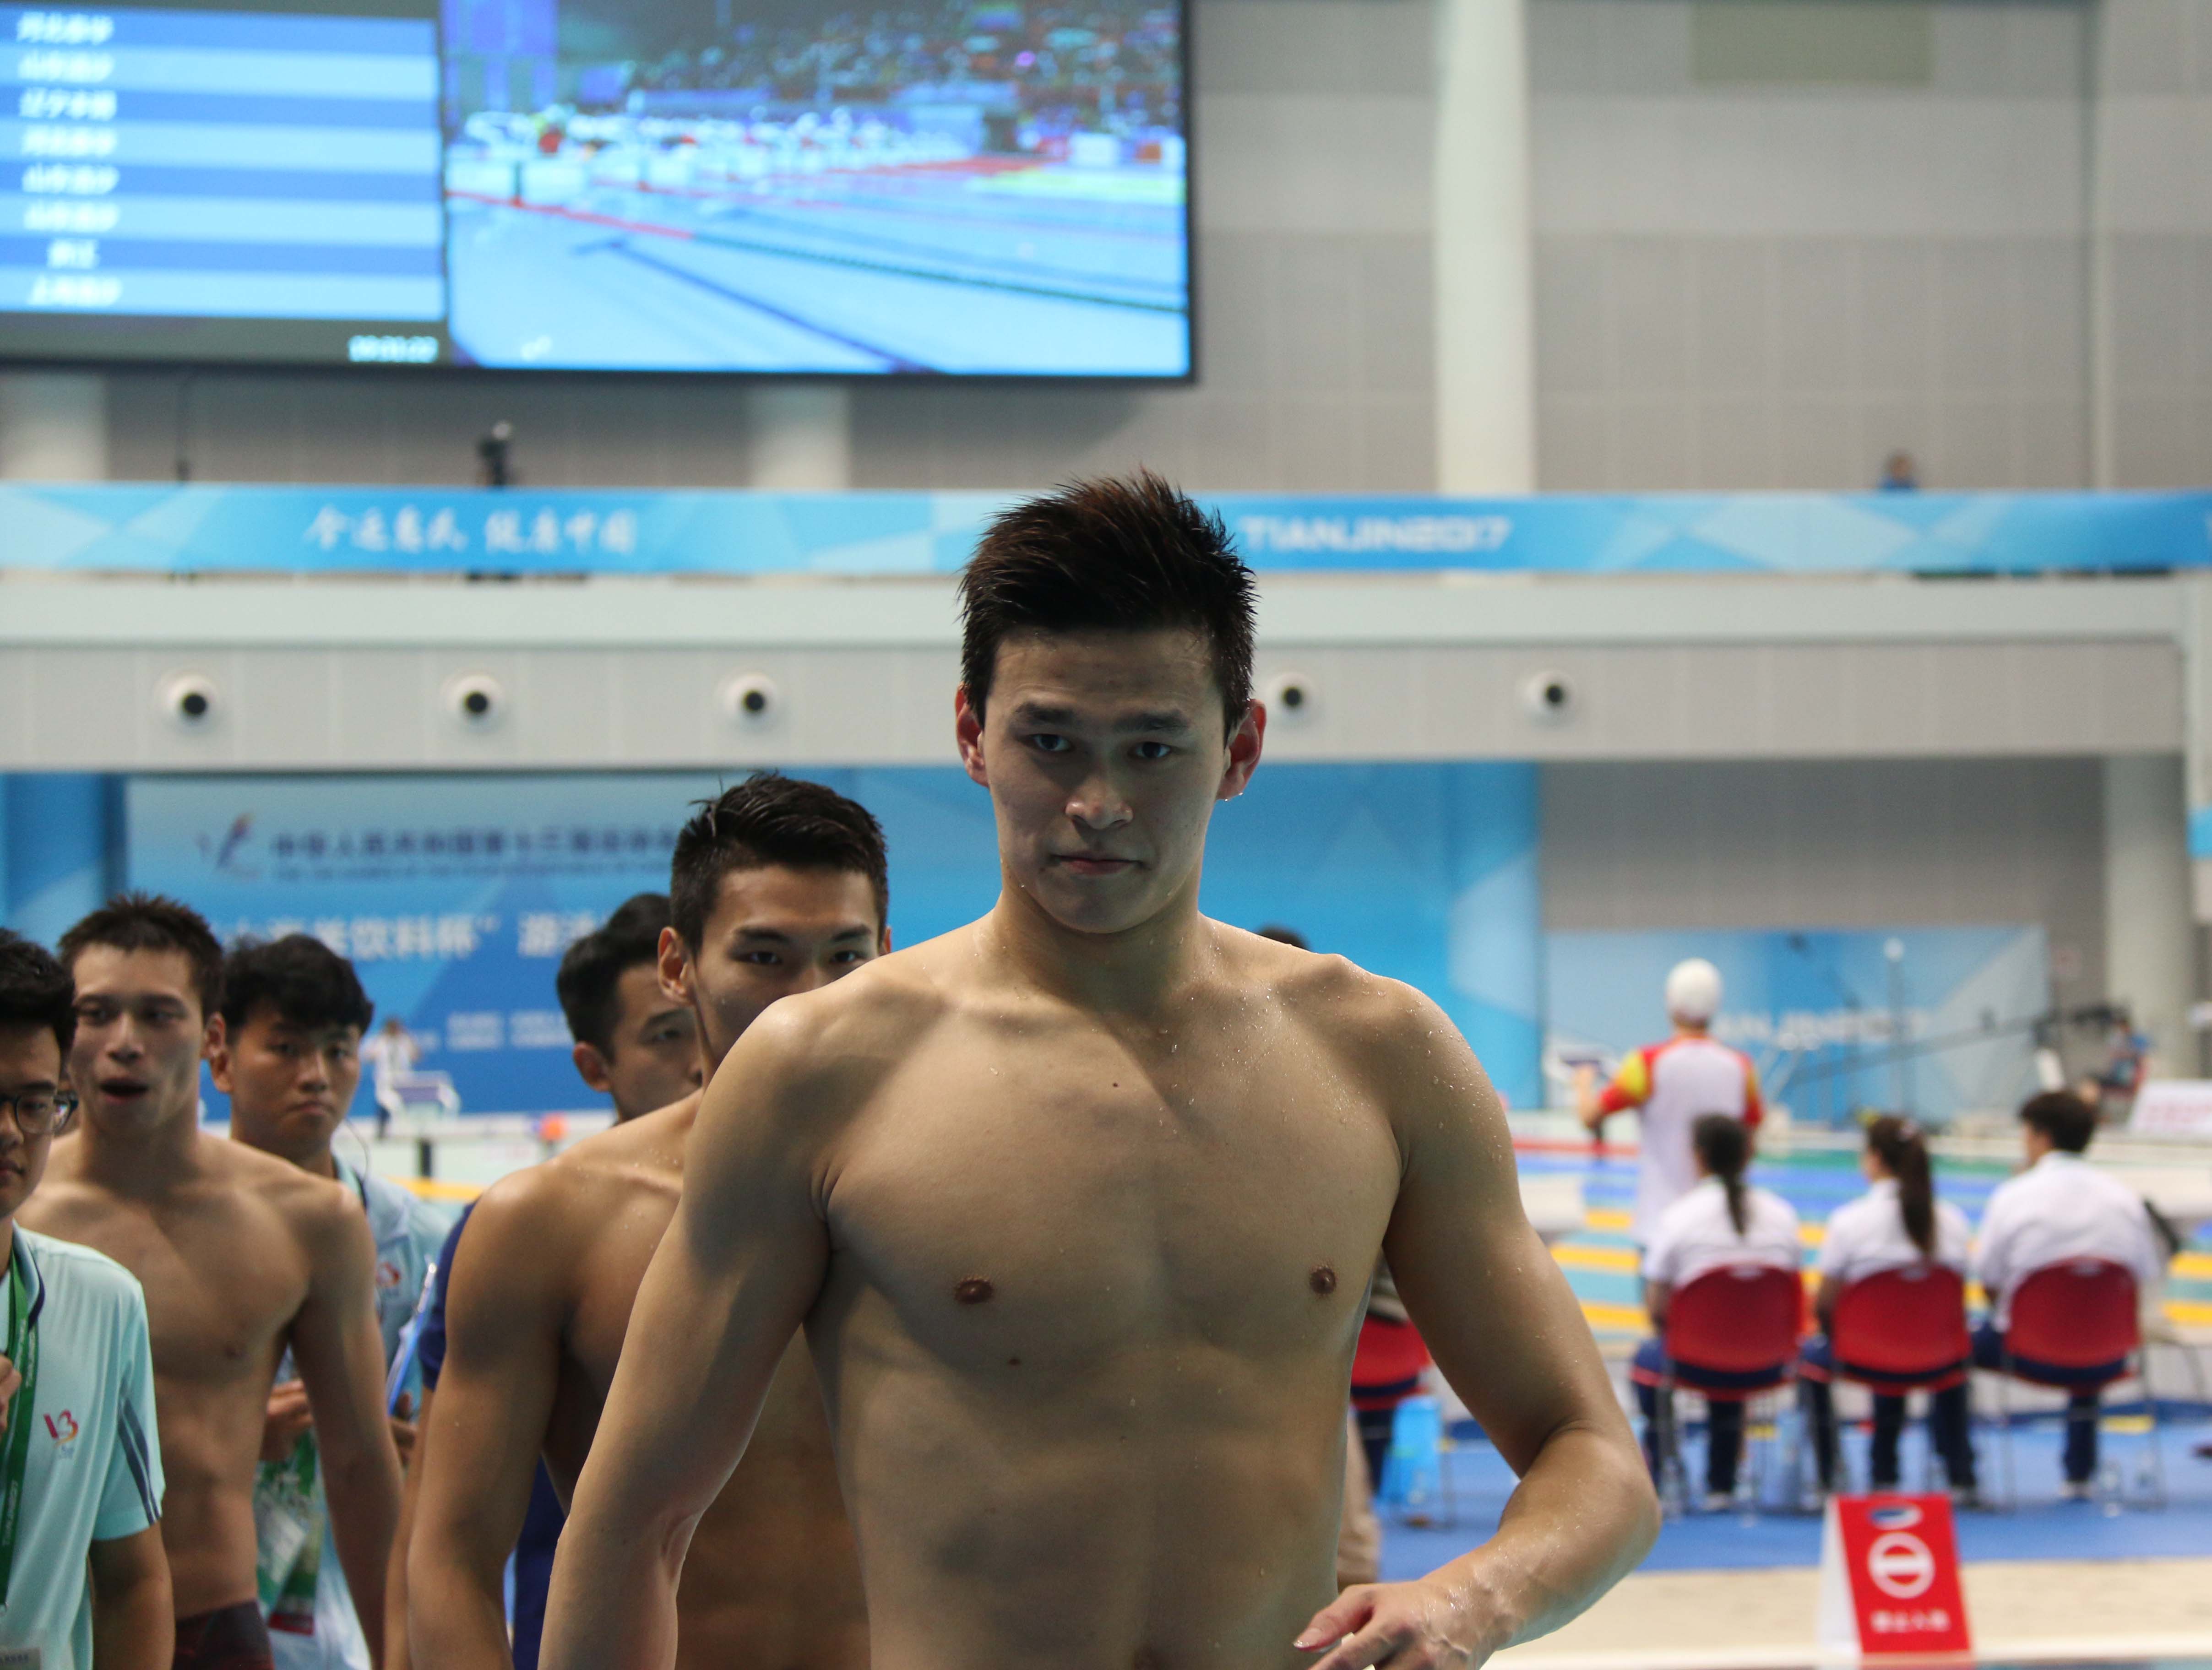 游泳跳水館中，孫楊、寧澤濤、葉詩文三位奧運冠軍悉數登場。孫楊率浙江隊奪得全運會自由泳接力冠軍。